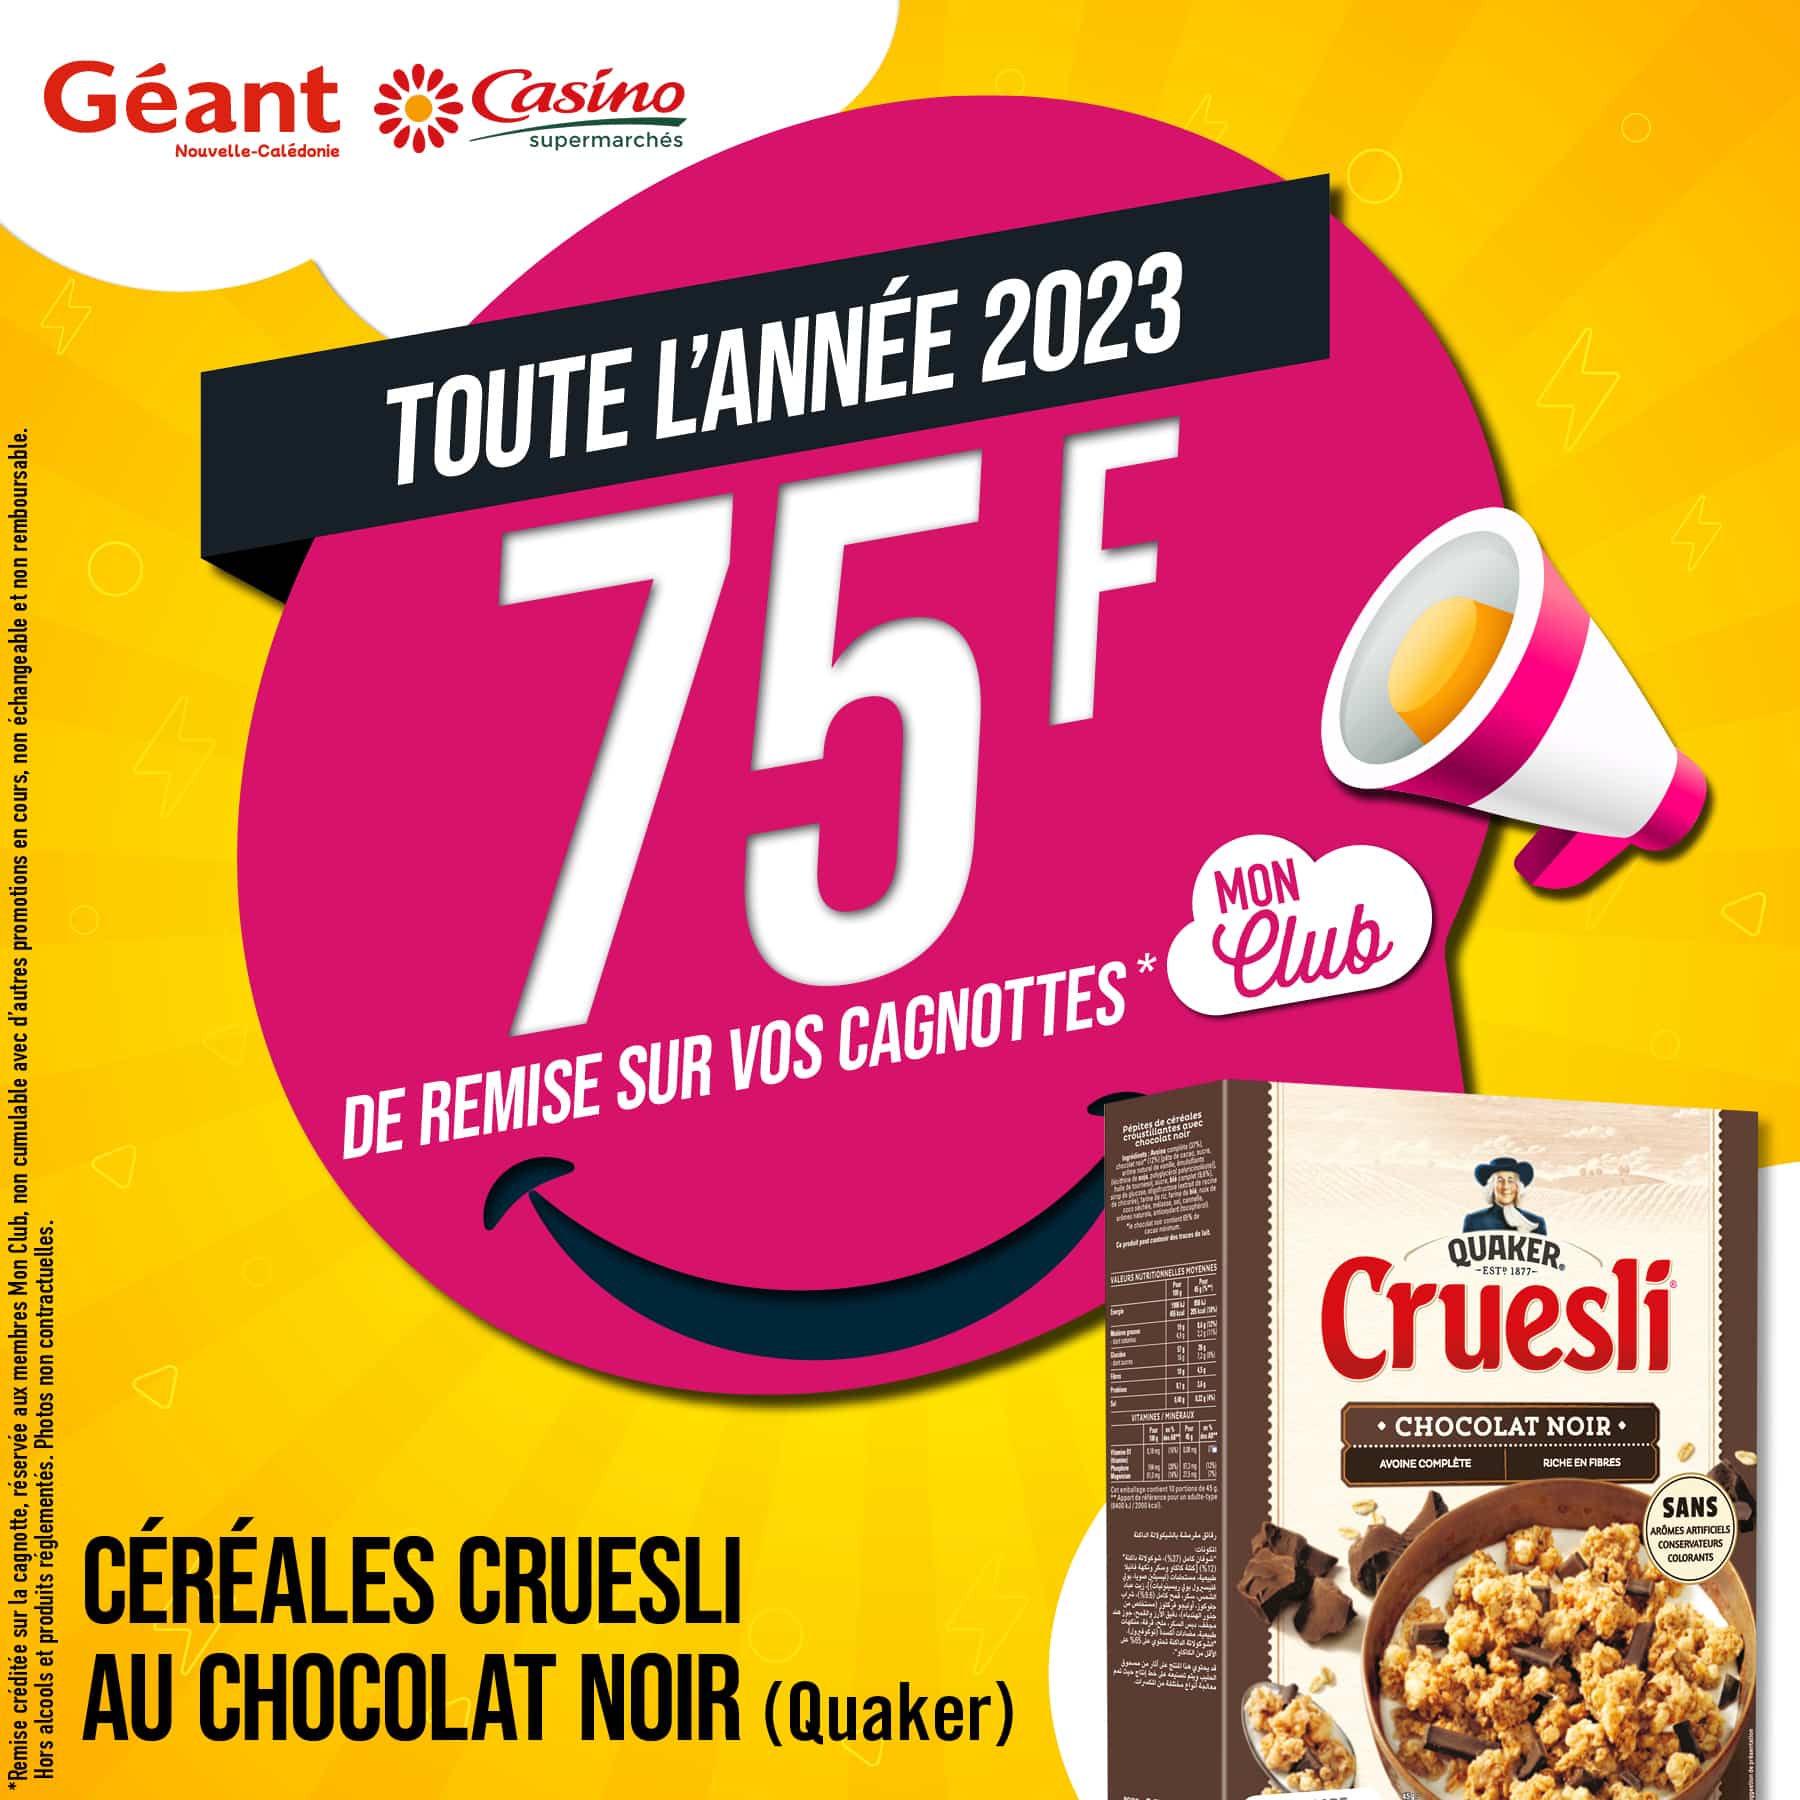 Happy Remises 🌾 Céréales Cruesli Au Chocolat Noir - Mon Club NC